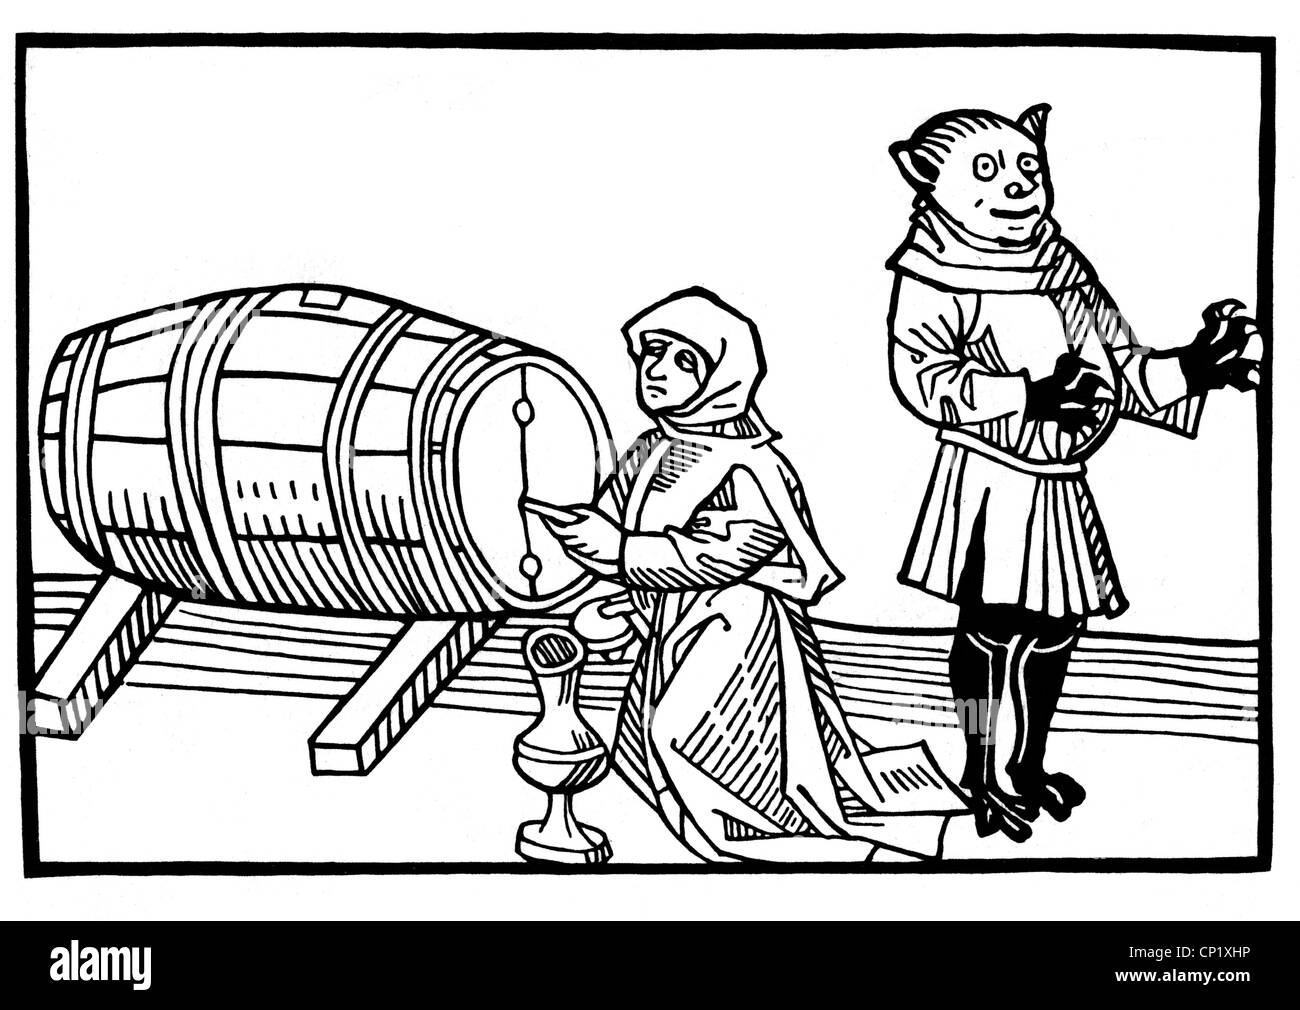 Hexen, Hexe und Teufel öffnen ein Fass Wein, Holzschnitt, 1486, Zusatz-Rechte-Clearenzen-nicht verfügbar Stockfoto